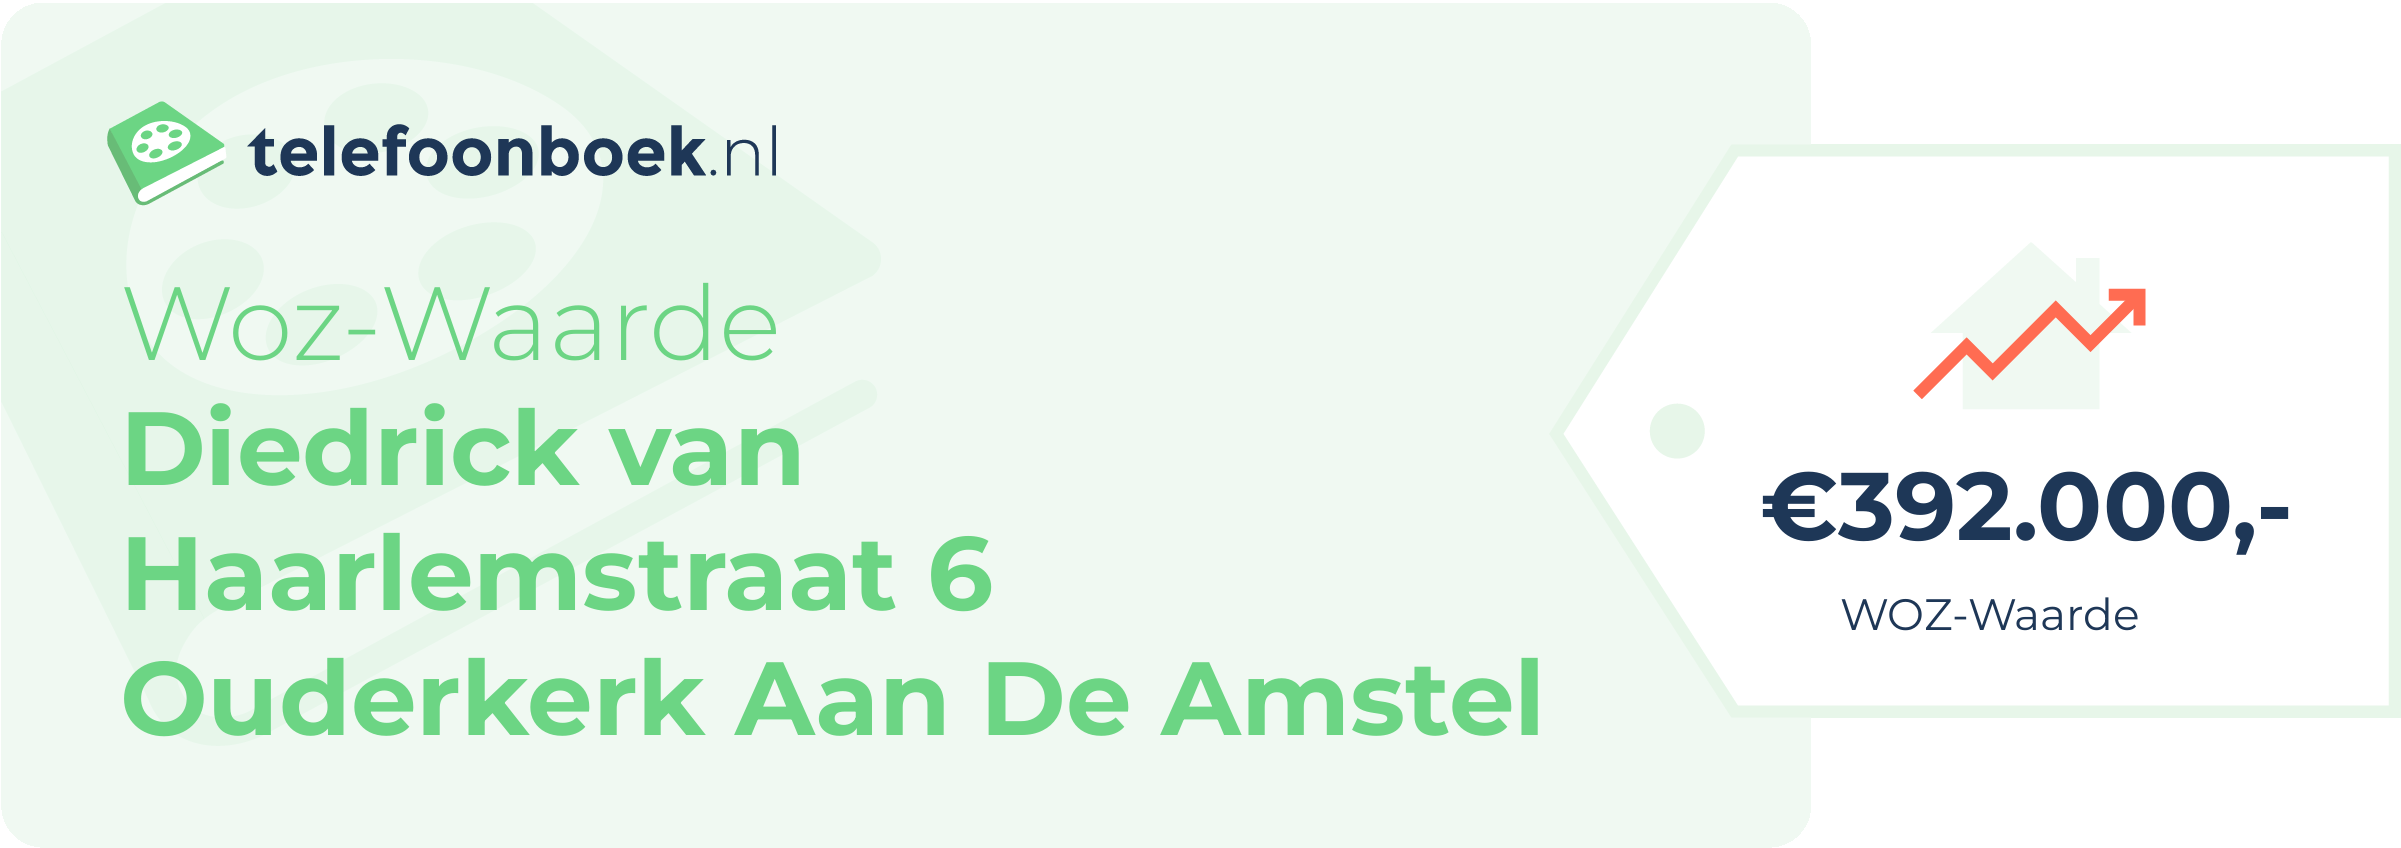 WOZ-waarde Diedrick Van Haarlemstraat 6 Ouderkerk Aan De Amstel